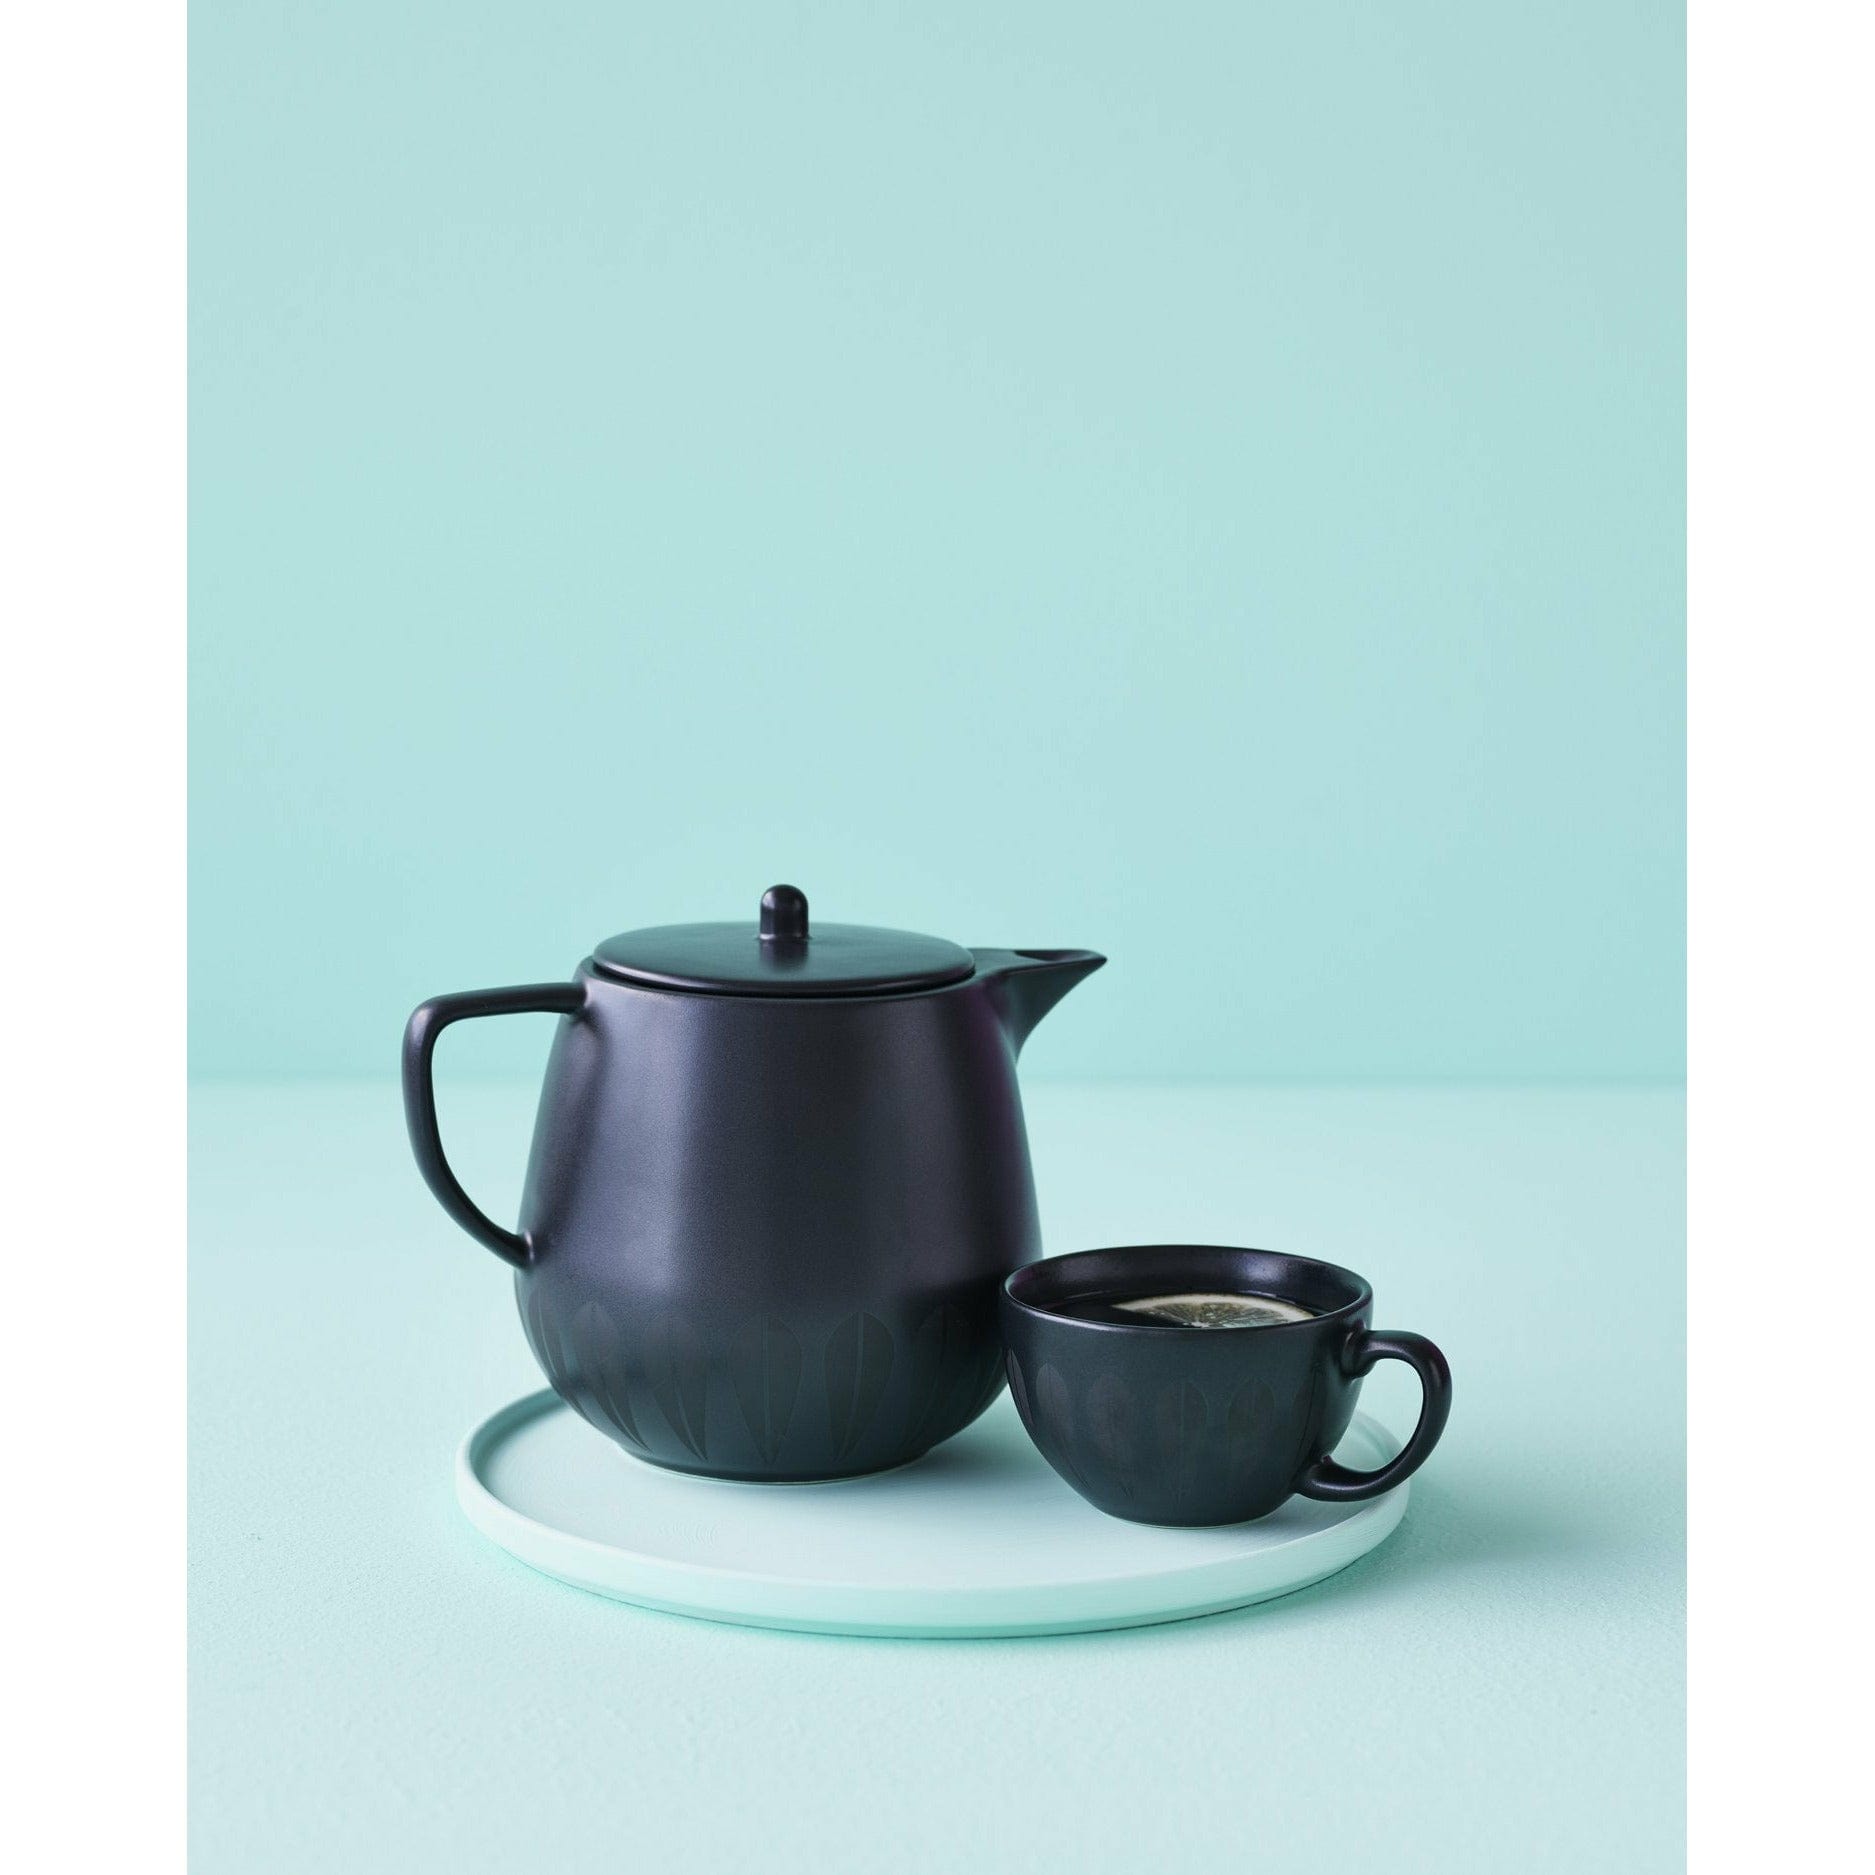 Lucie Kaas Arne Clausen Lotus Teapot, zwart